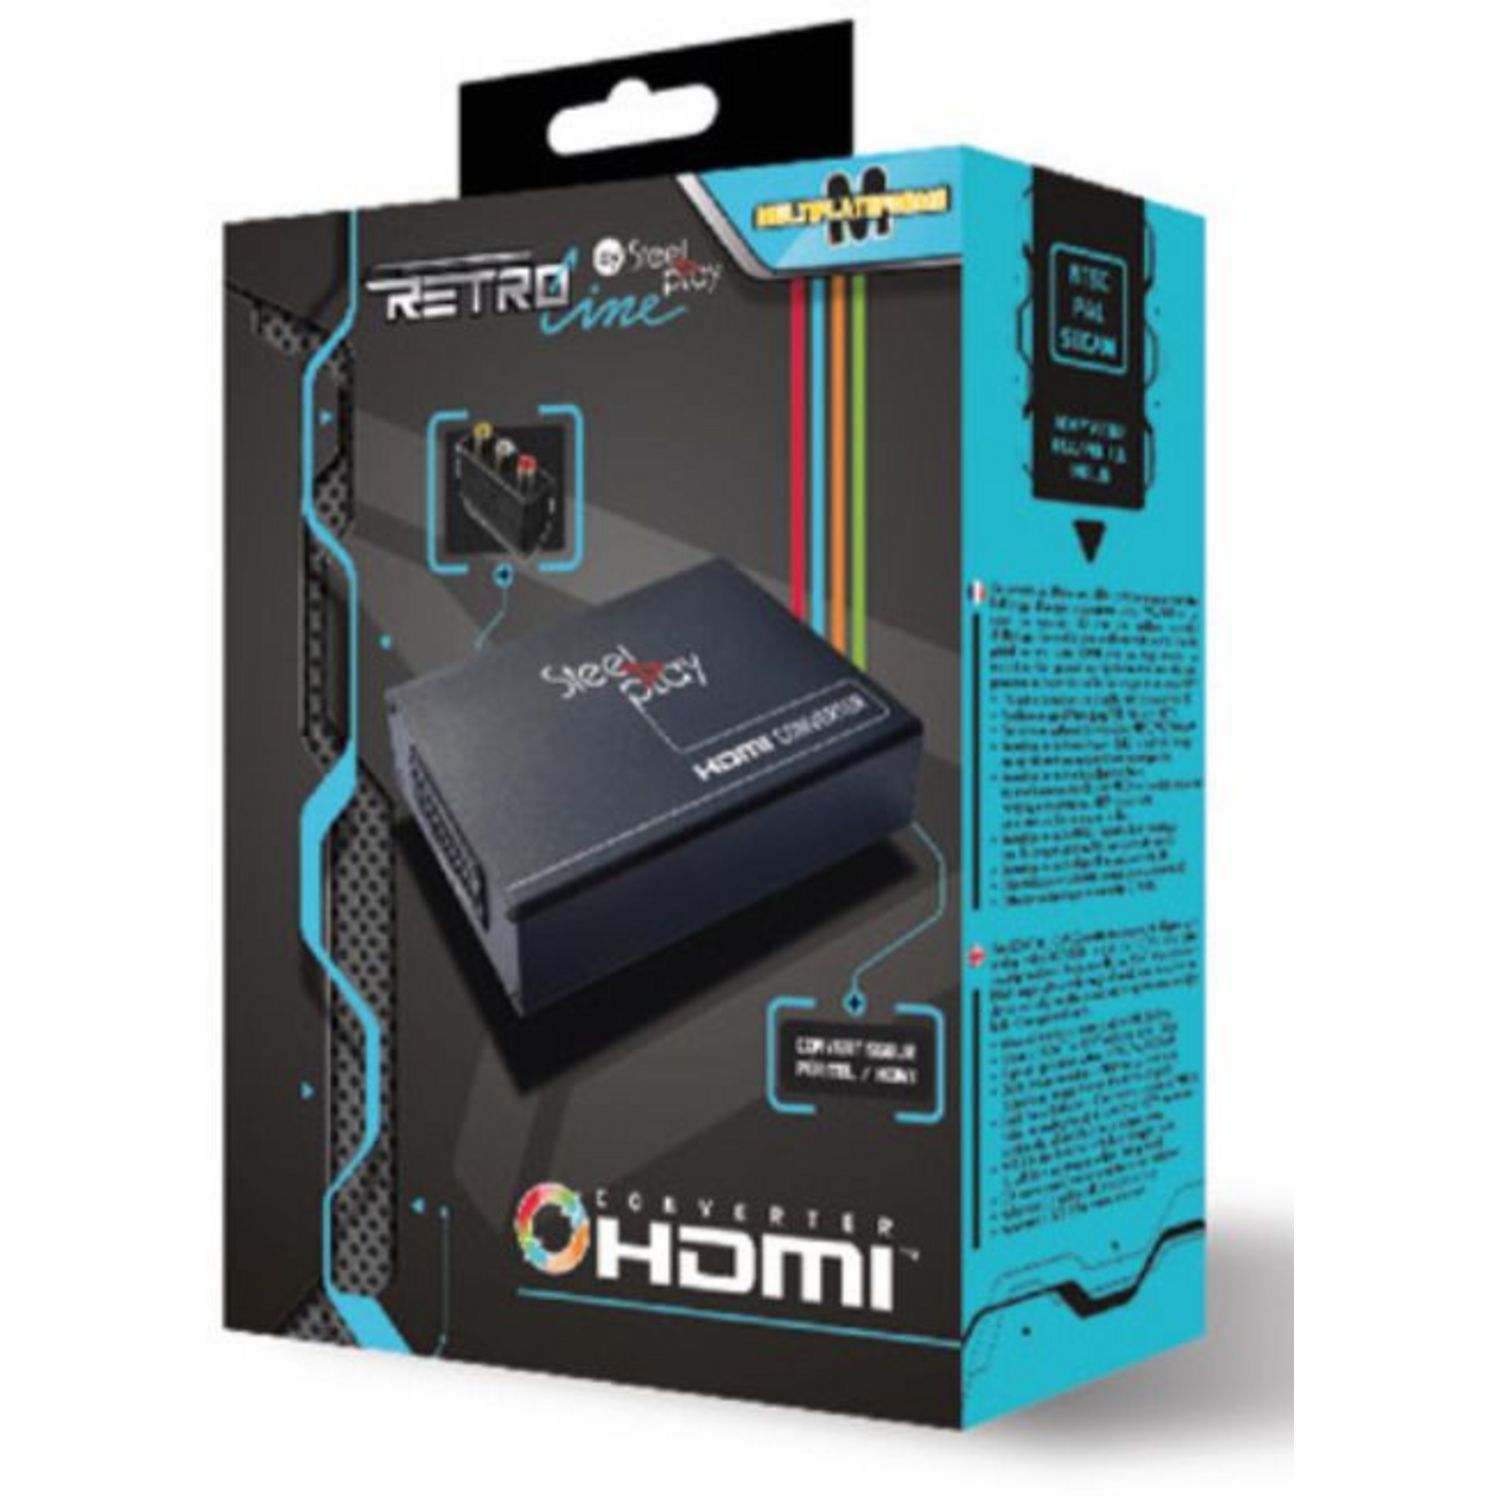 Adaptateur Péritel vers HDMI, Convertisseur Péritel vers HDMI avec